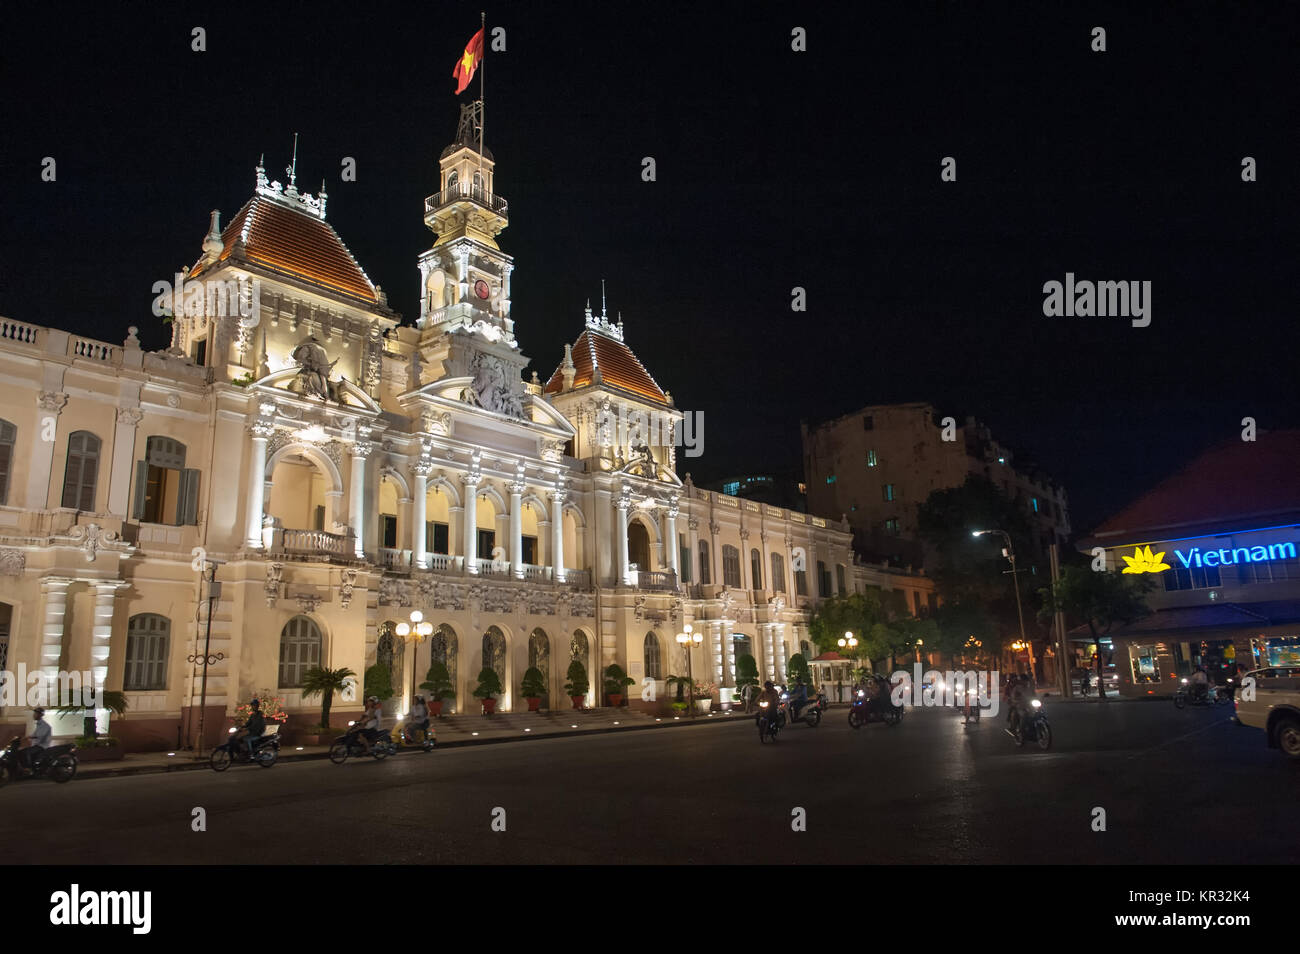 Ho Chi Minh City Hall di notte. Precedentemente conosciuto come Hotel de Ville è stato costruito in stile coloniale Francese e rimane Saigon più iconico Edificio. Foto Stock